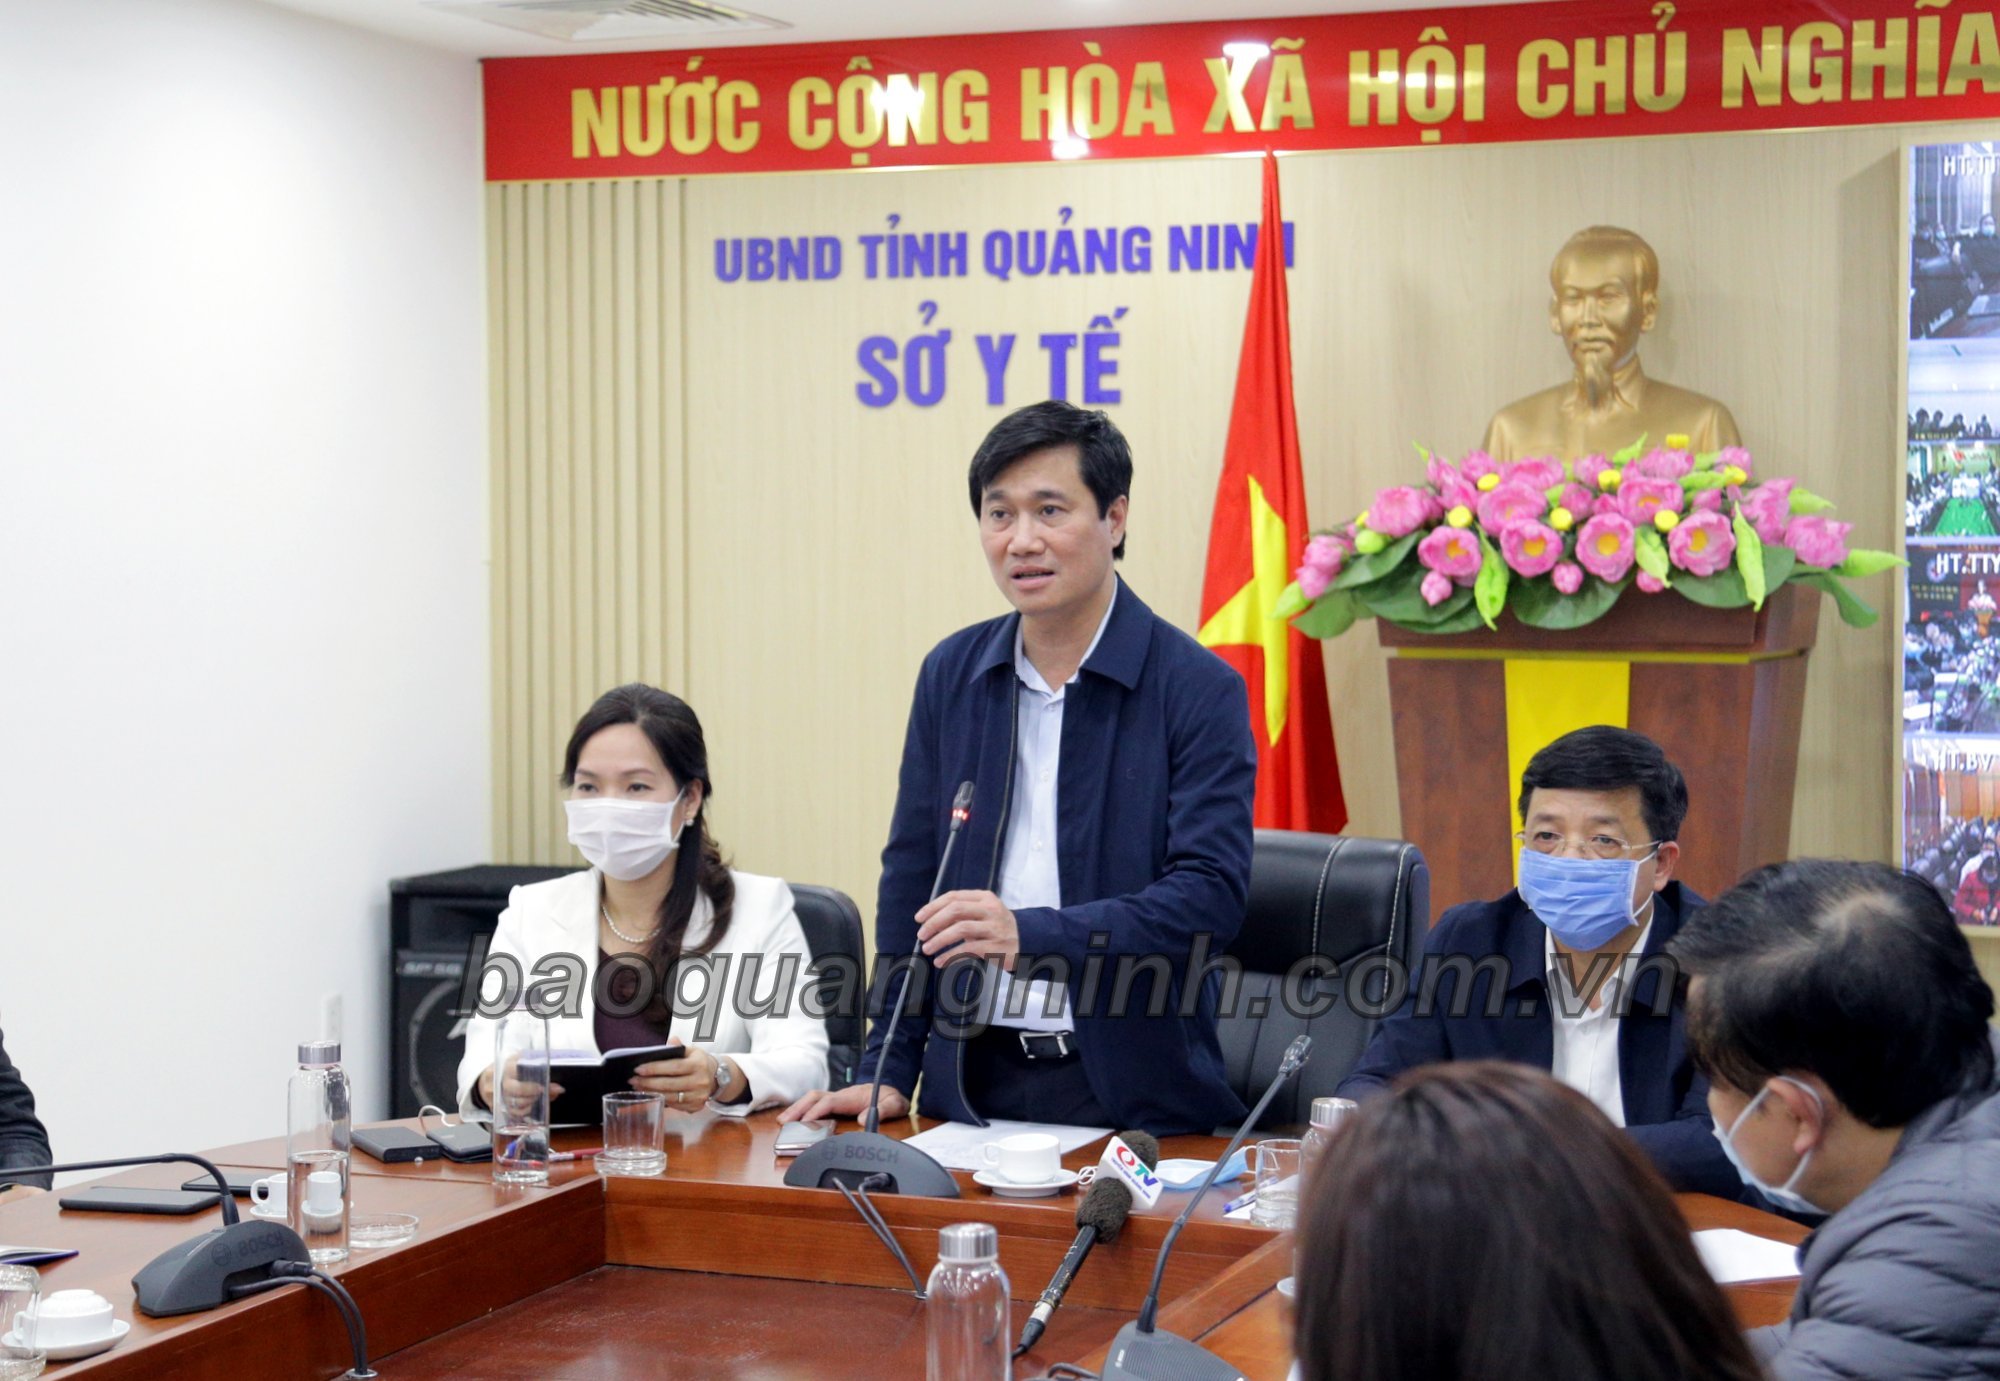 Đồng chí Nguyễn Tường Văn, Phó Bí thư Tỉnh uỷ, Chủ tịch UBND tỉnh, phát biểu chỉ đạo tại cuộc họp trực tuyến với các địa phương trong tỉnh.